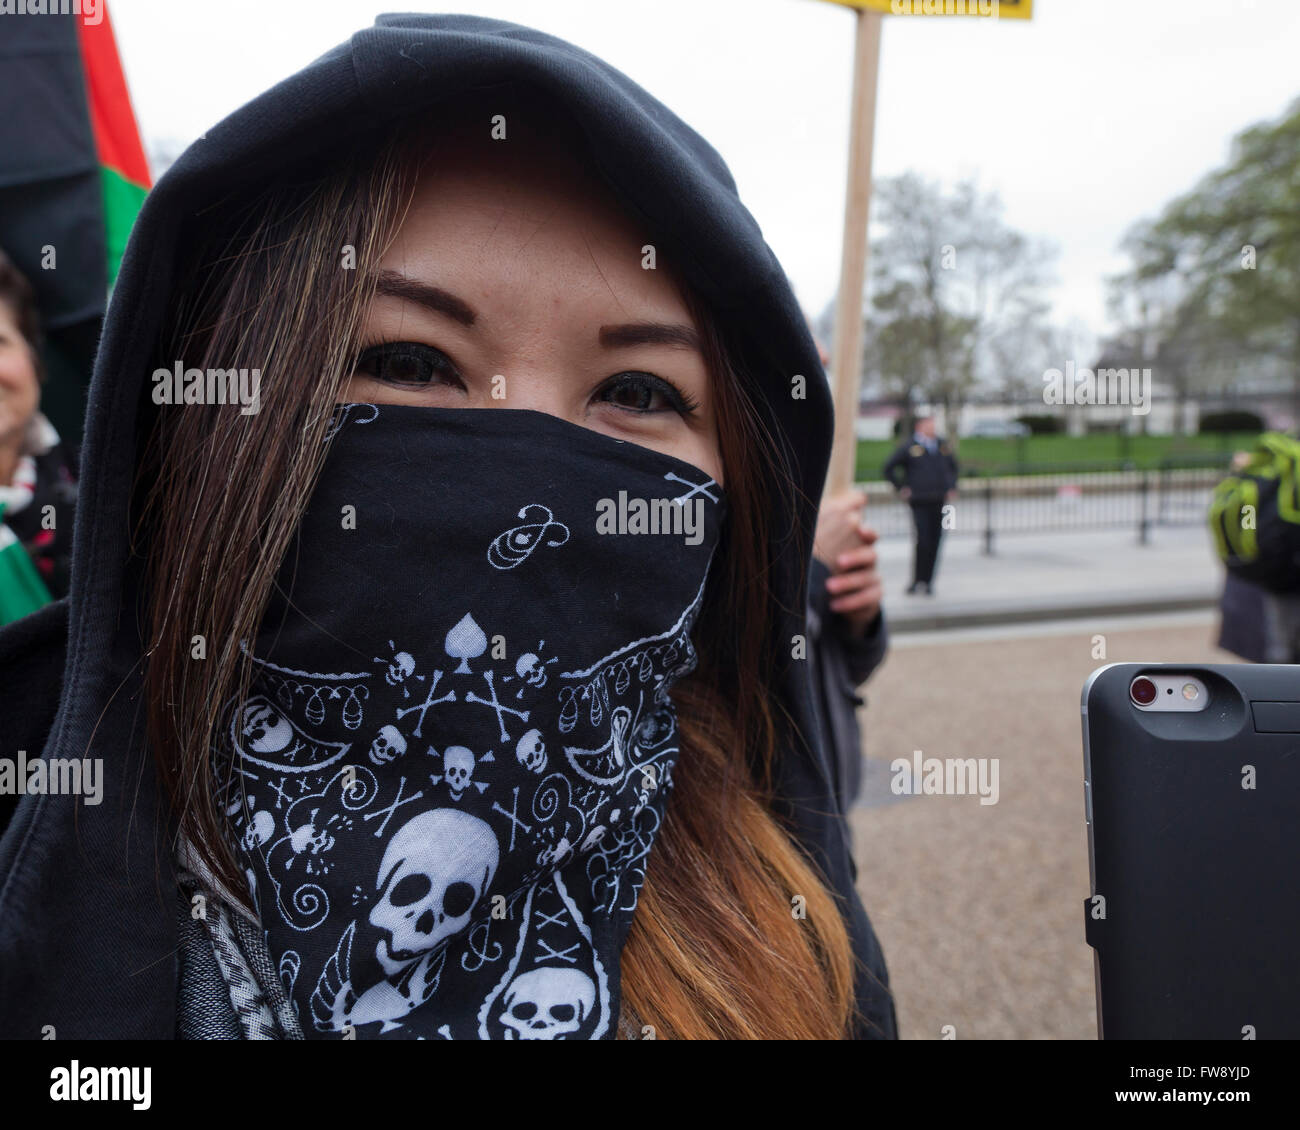 Woman wearing a bandana mask - USA Stock Photo